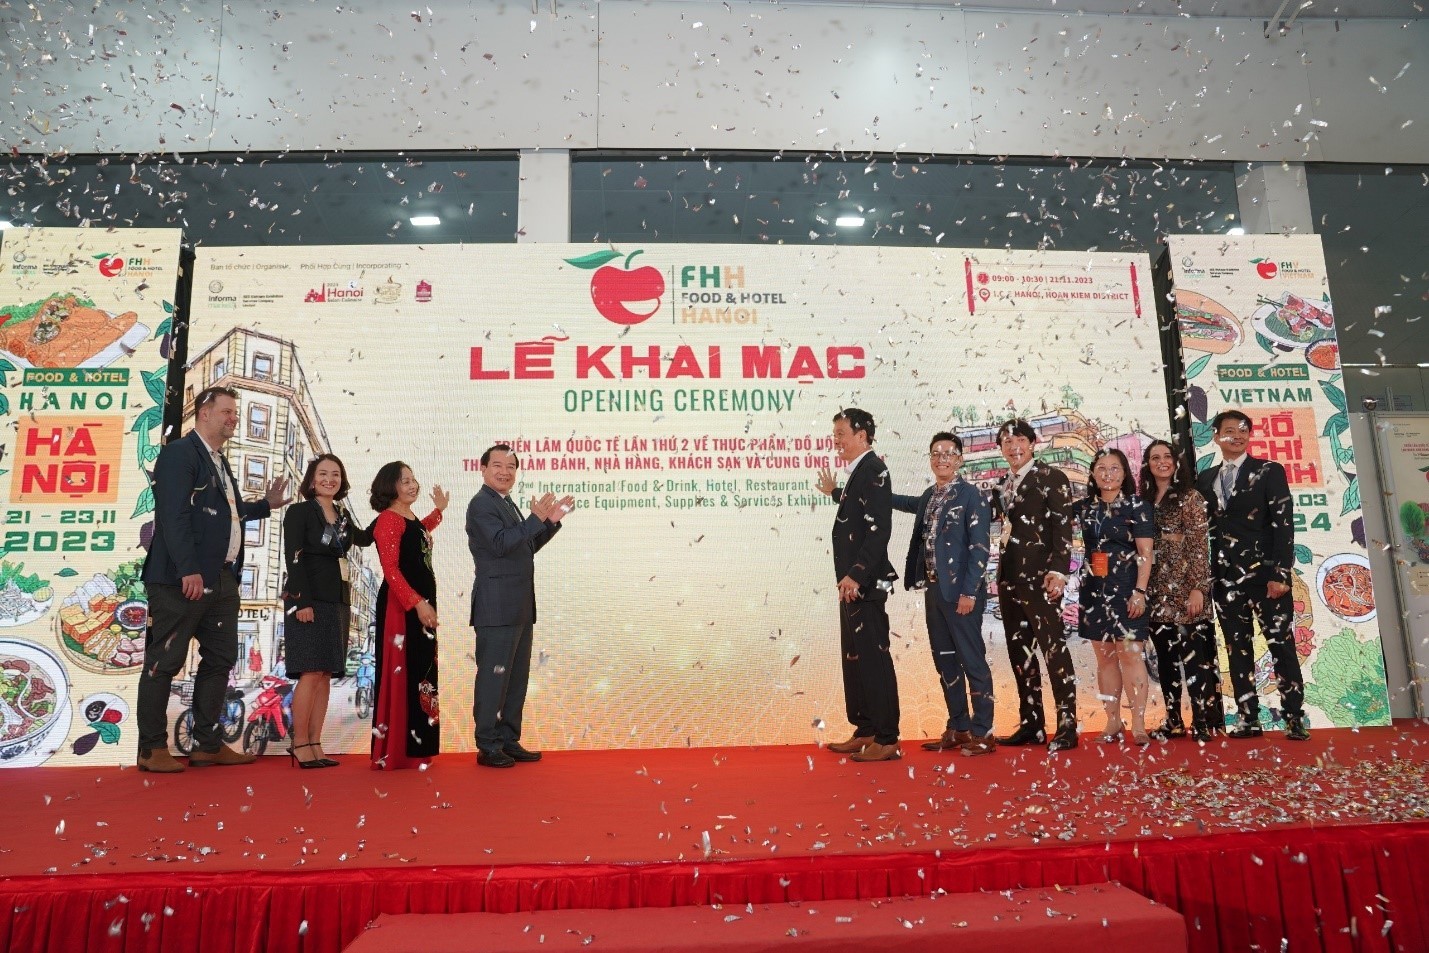 le-khai-mac-food-hotel-hanoi-2023-pld-1700544780.jpg